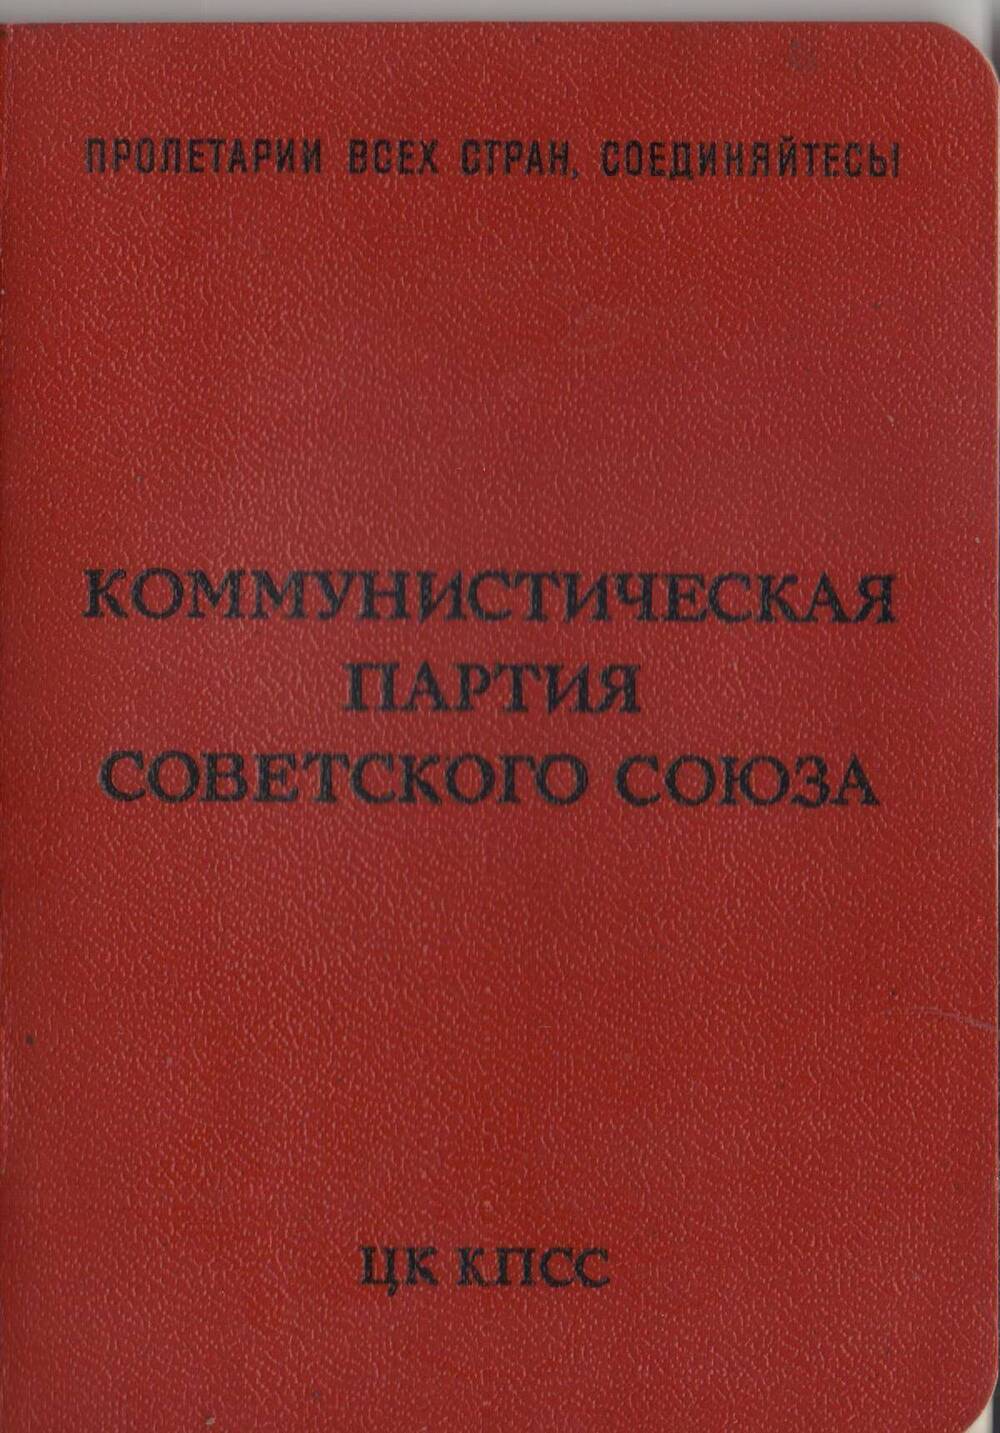 Билет партийный № 13132916 Бухмировой Валентины Николаевны - члена КПСС.